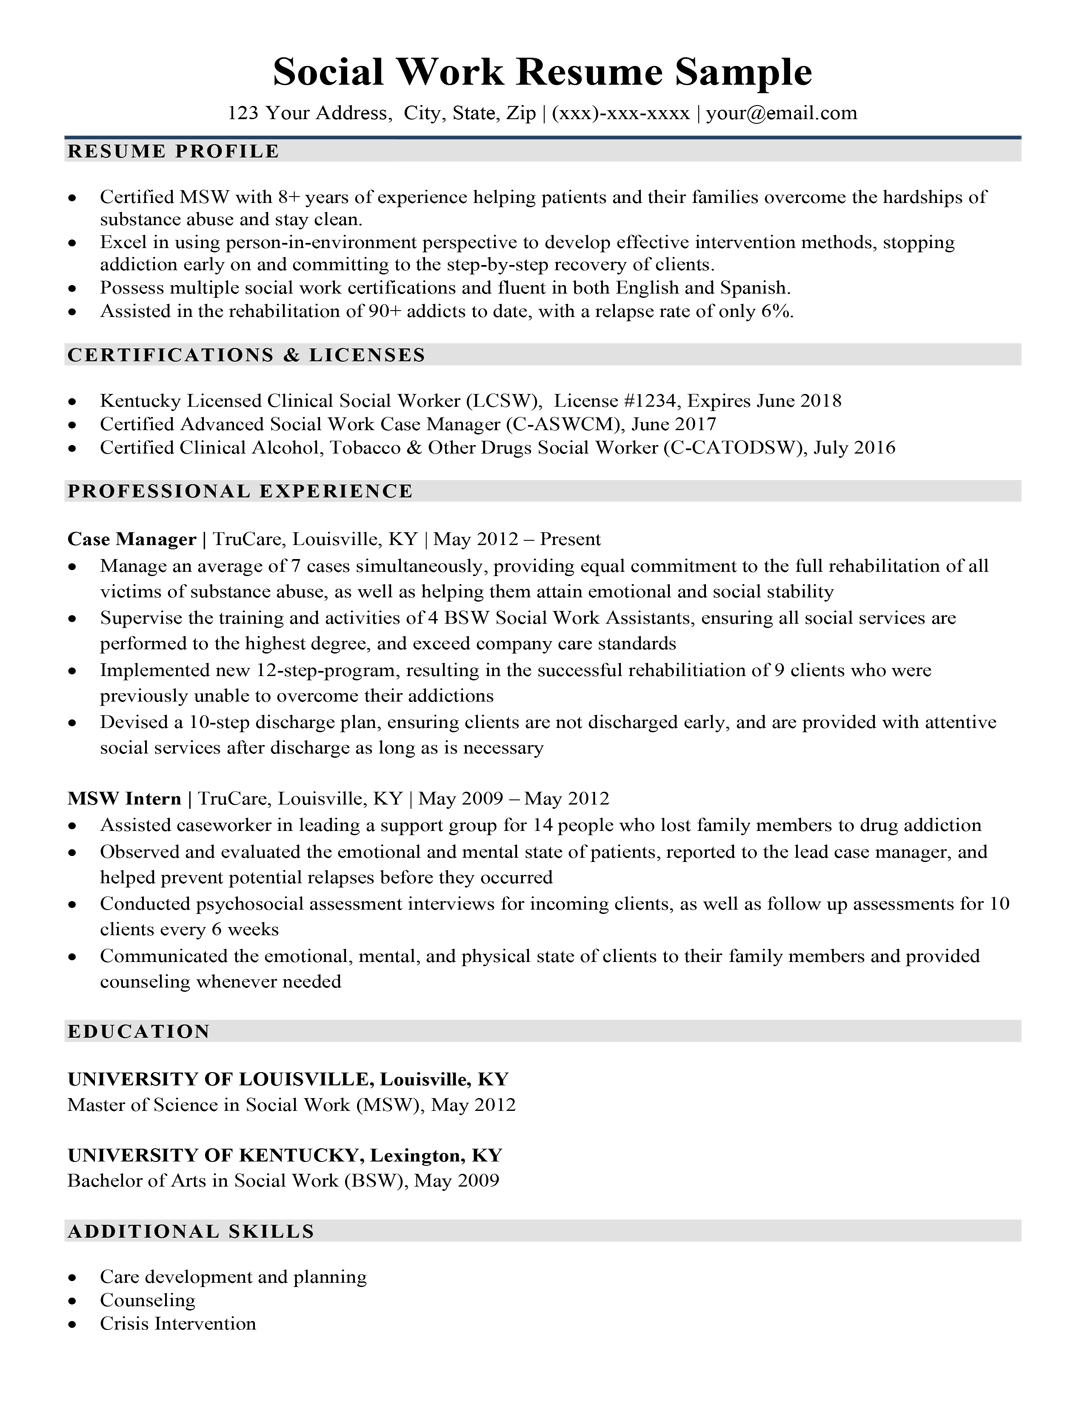 Social work resume sample